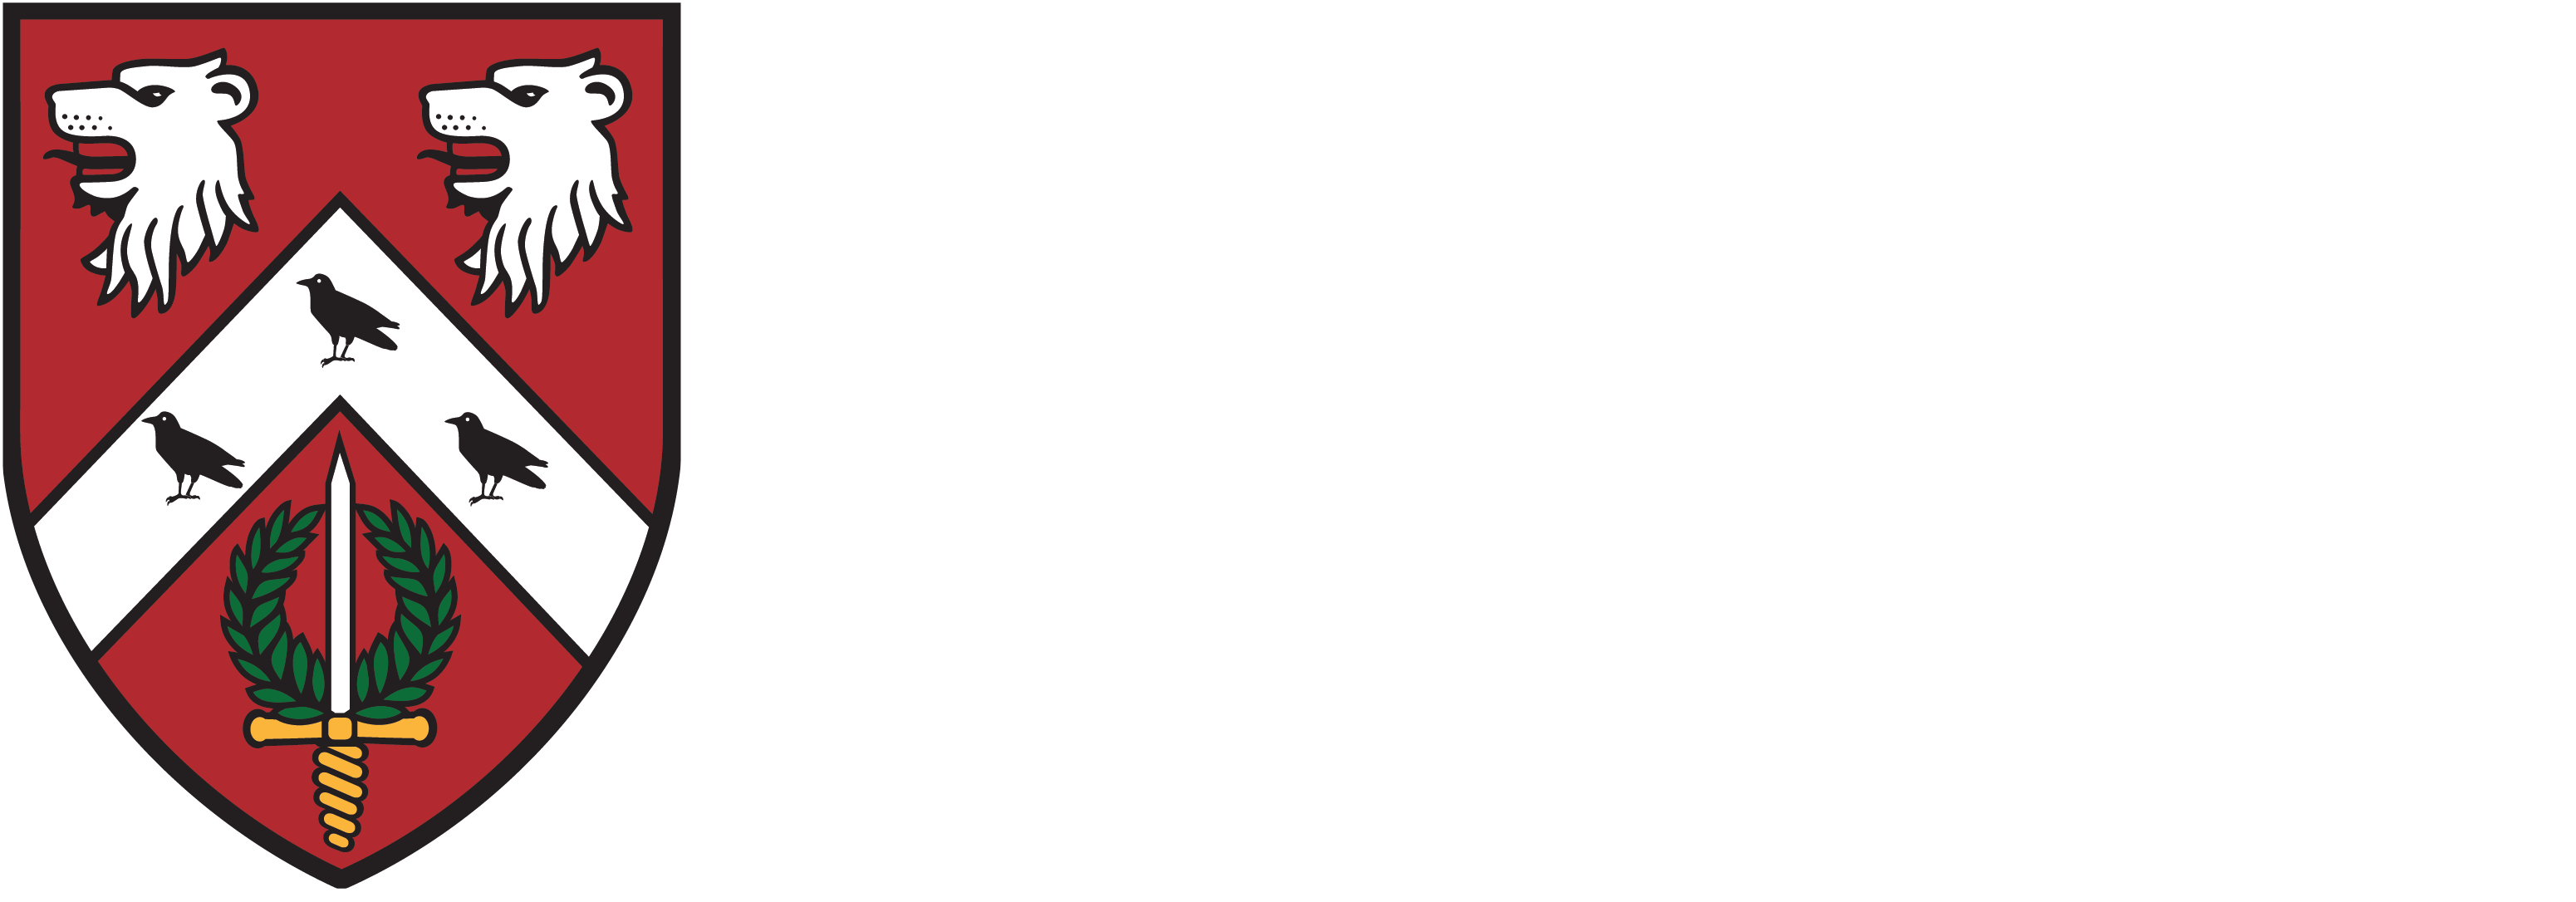 St Anne's College crest logo